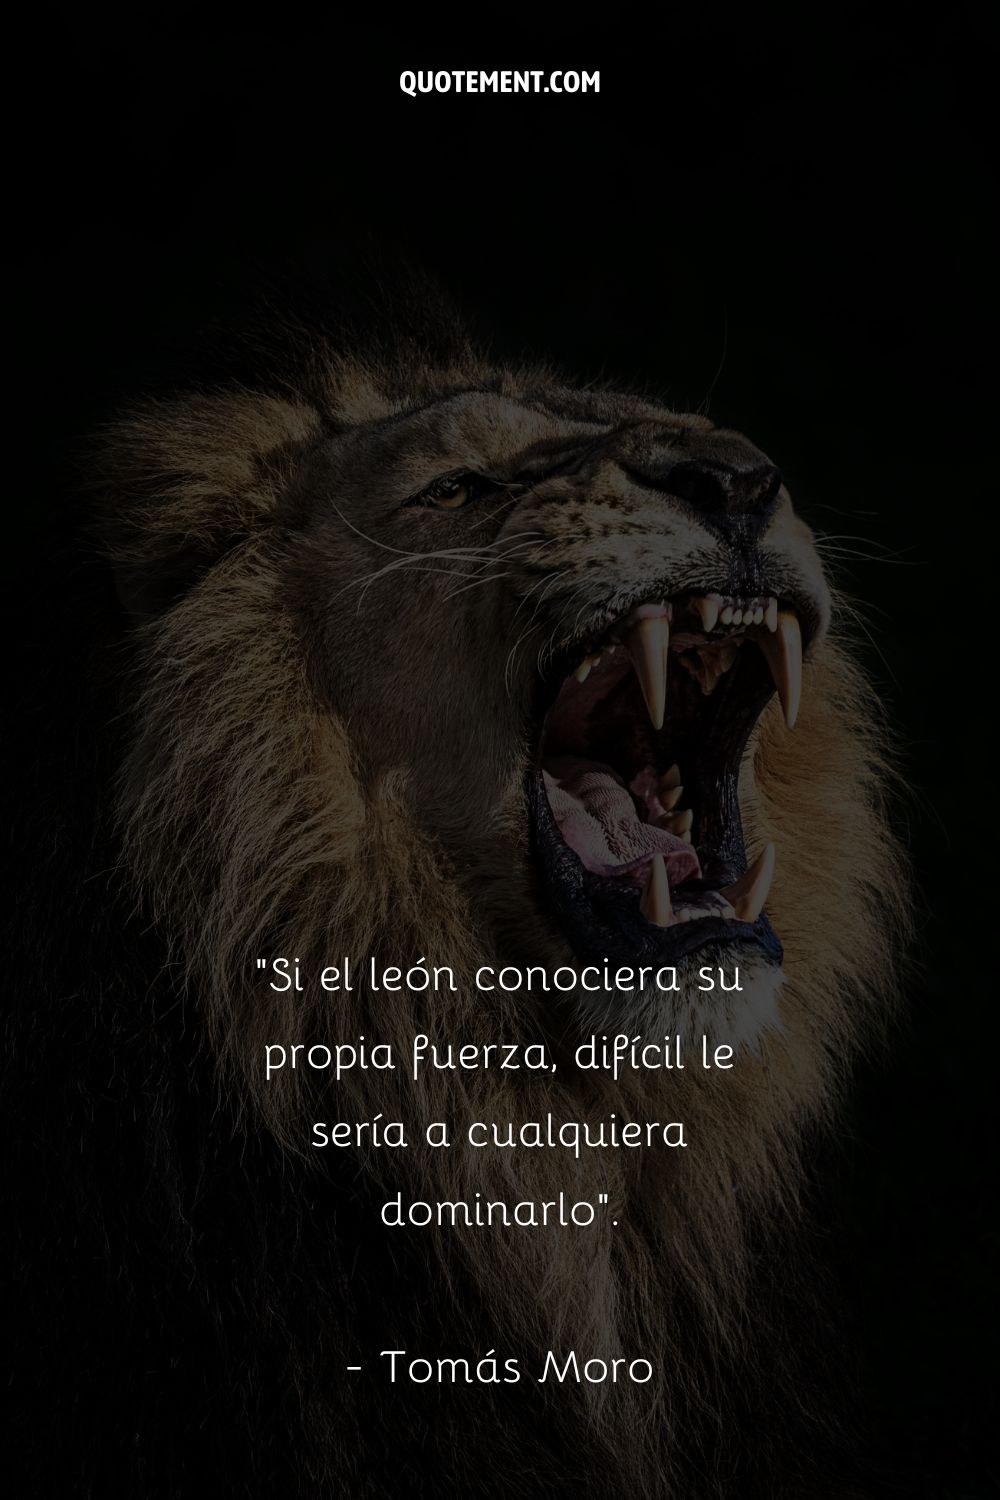 Si el león conociera su propia fuerza, difícil sería para cualquier hombre dominarlo